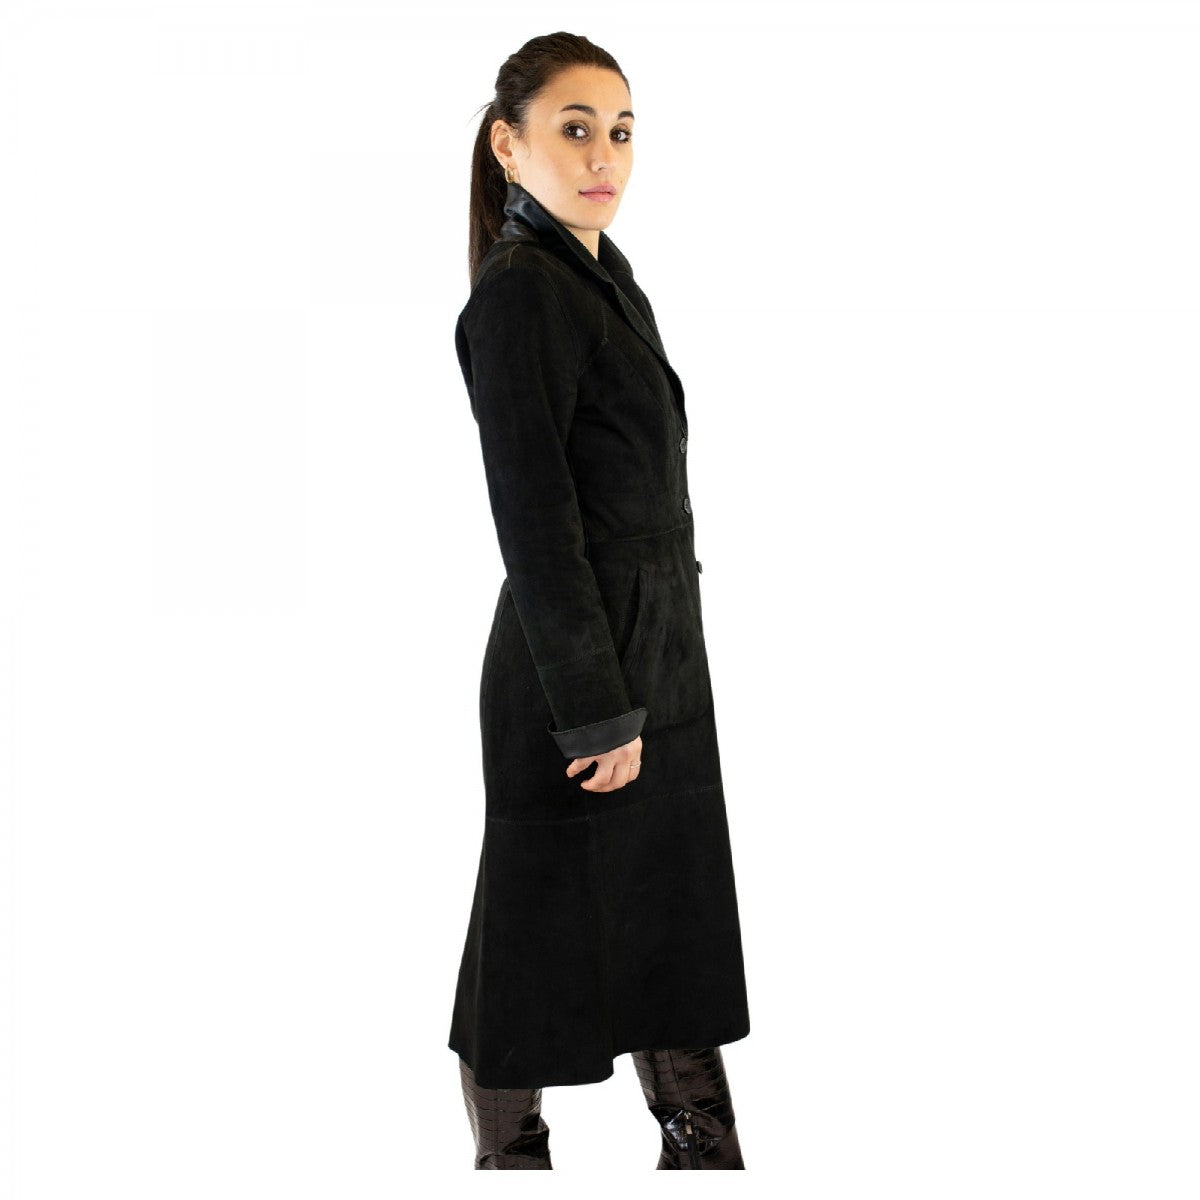 Giacca reversibile lunga elegante da donna fatta a mano in pelle nera con cintura